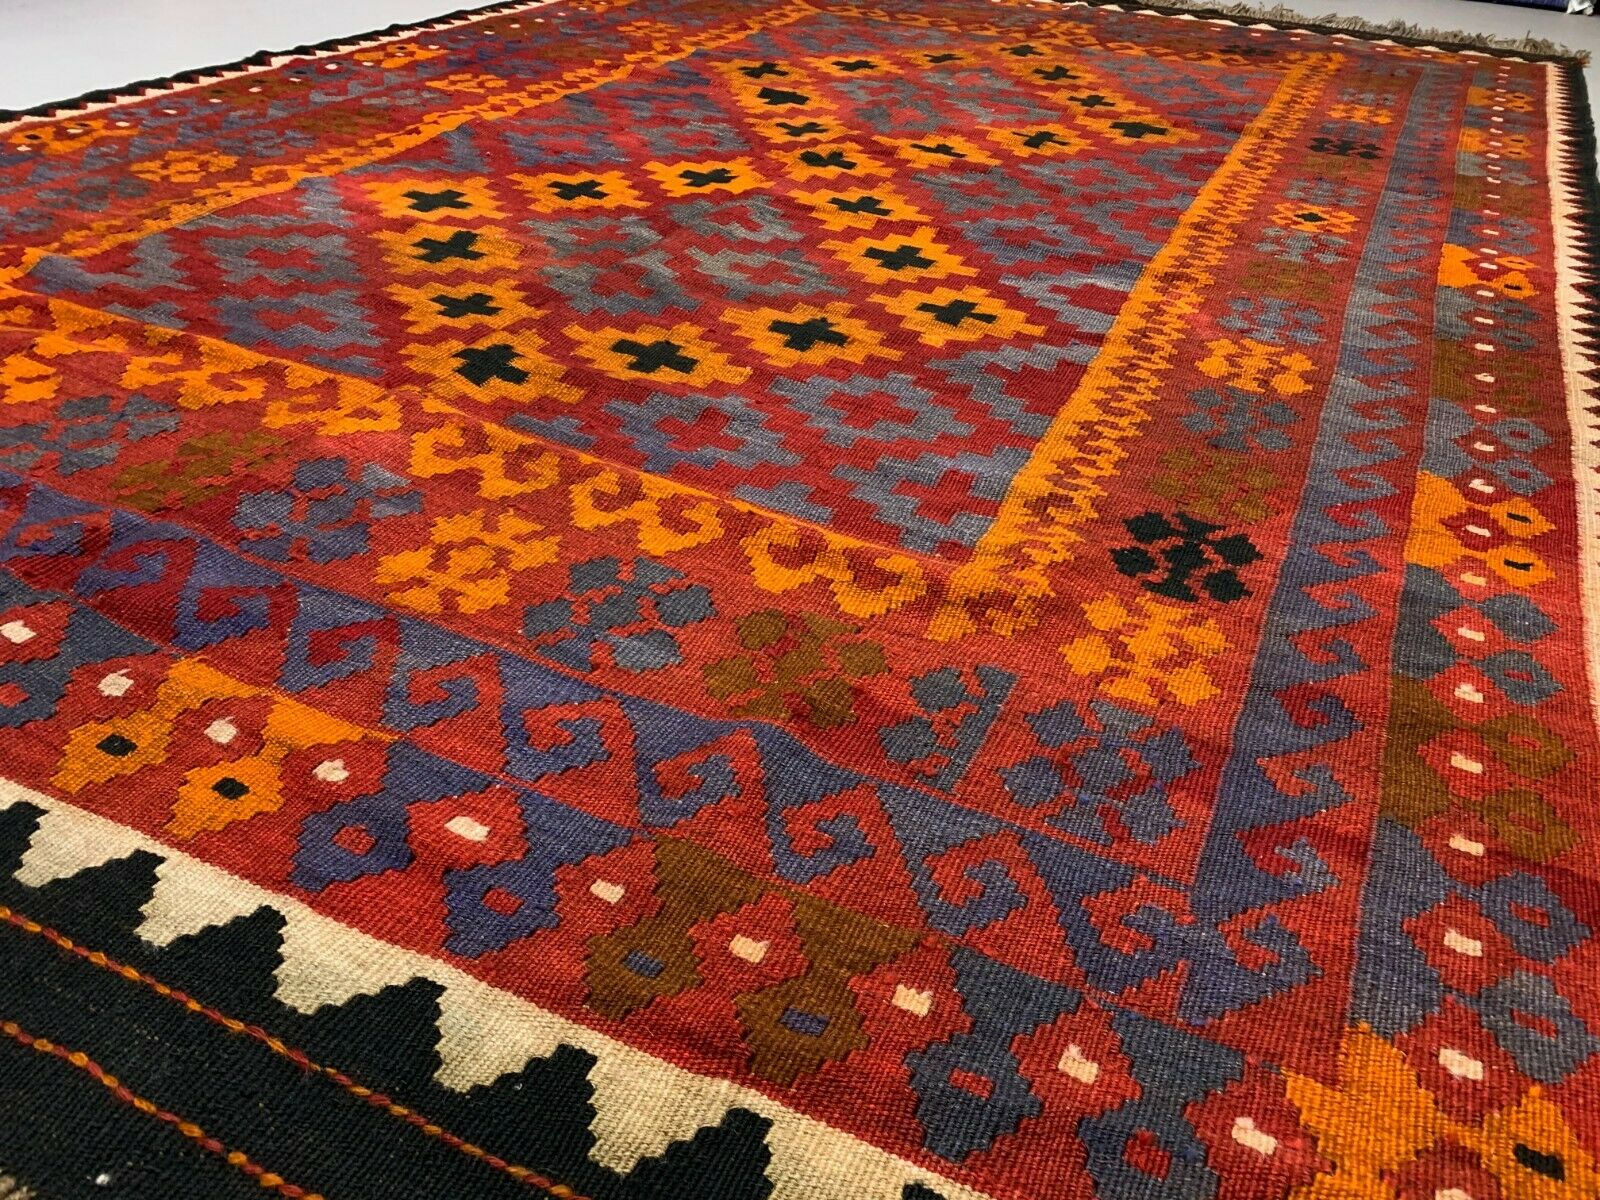 Vintage Afghan Tribal Kilim Wool Rug 300x192 cm Red, Orange, Brown, Black Large